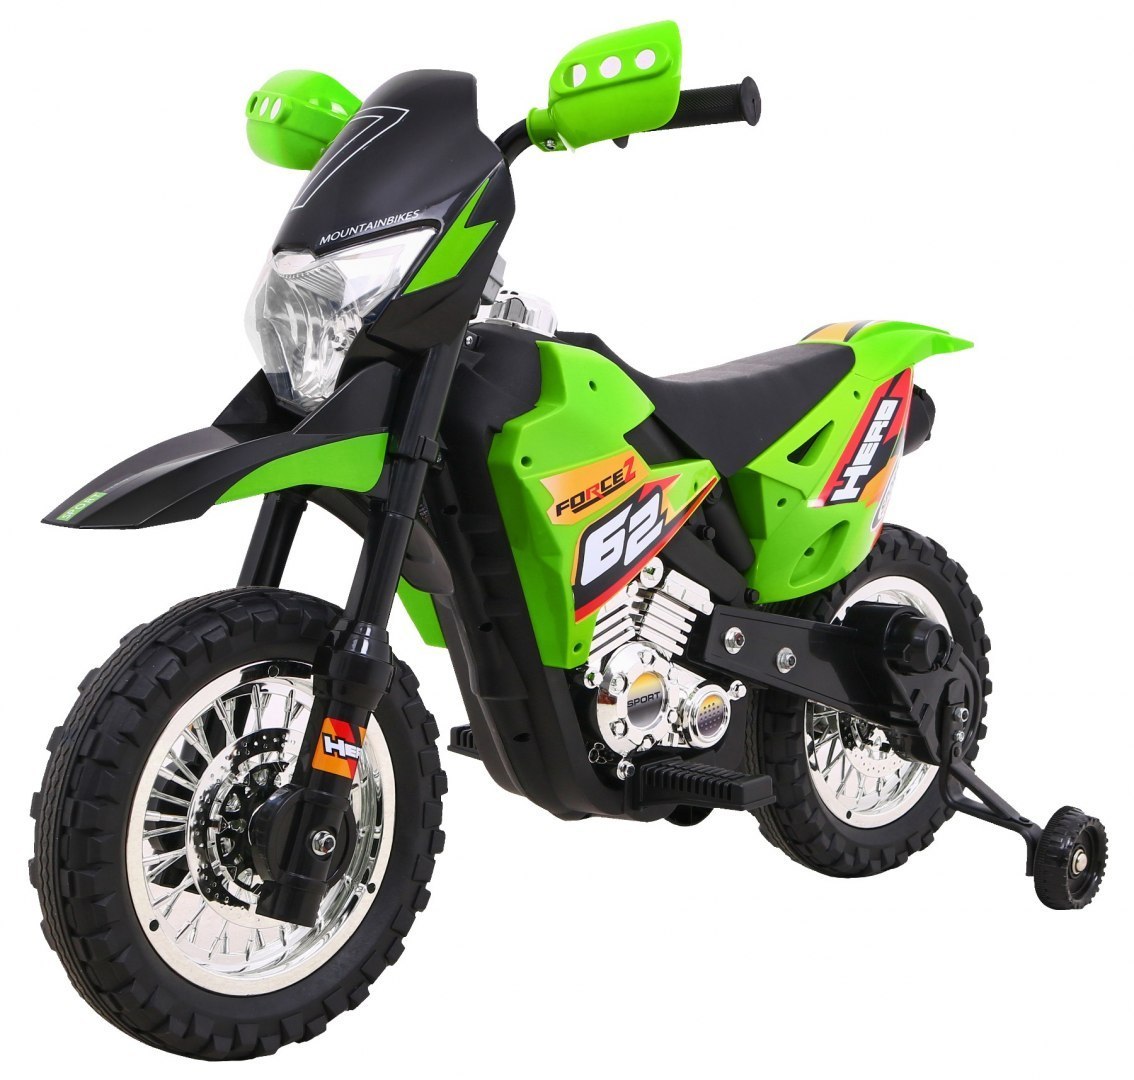  Dětská elektrická motorka Cross Force zelená